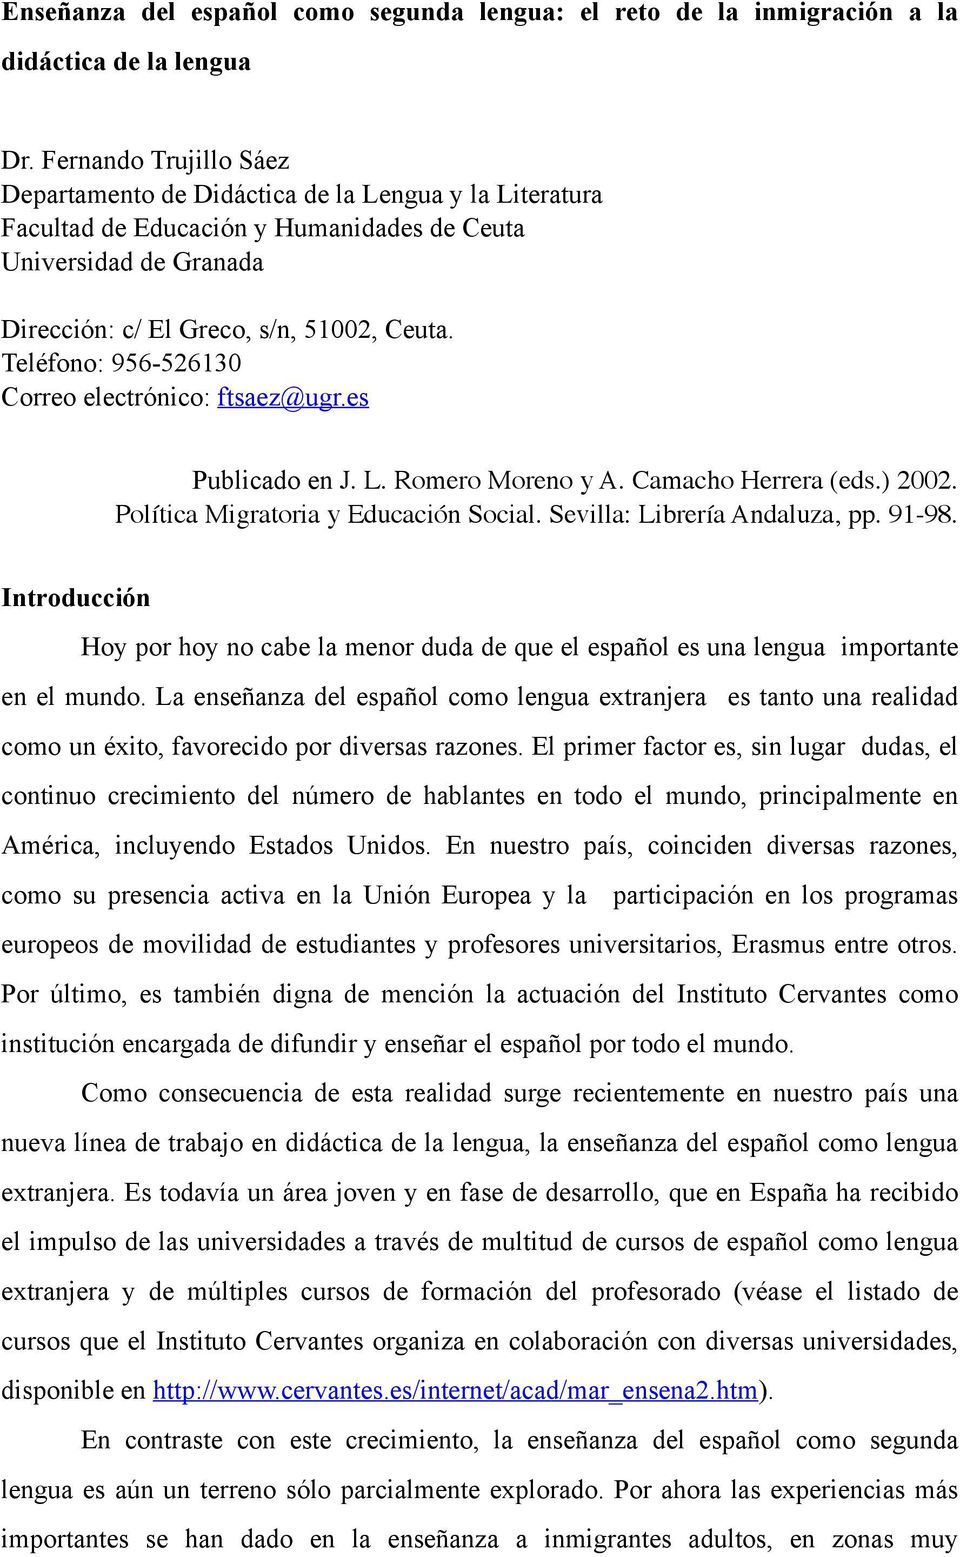 Teléfono: 956-526130 Correo electrónico: ftsaez@ugr.es Publicado en J. L. Romero Moreno y A. Camacho Herrera (eds.) 2002. Política Migratoria y Educación Social. Sevilla: Librería Andaluza, pp. 91-98.